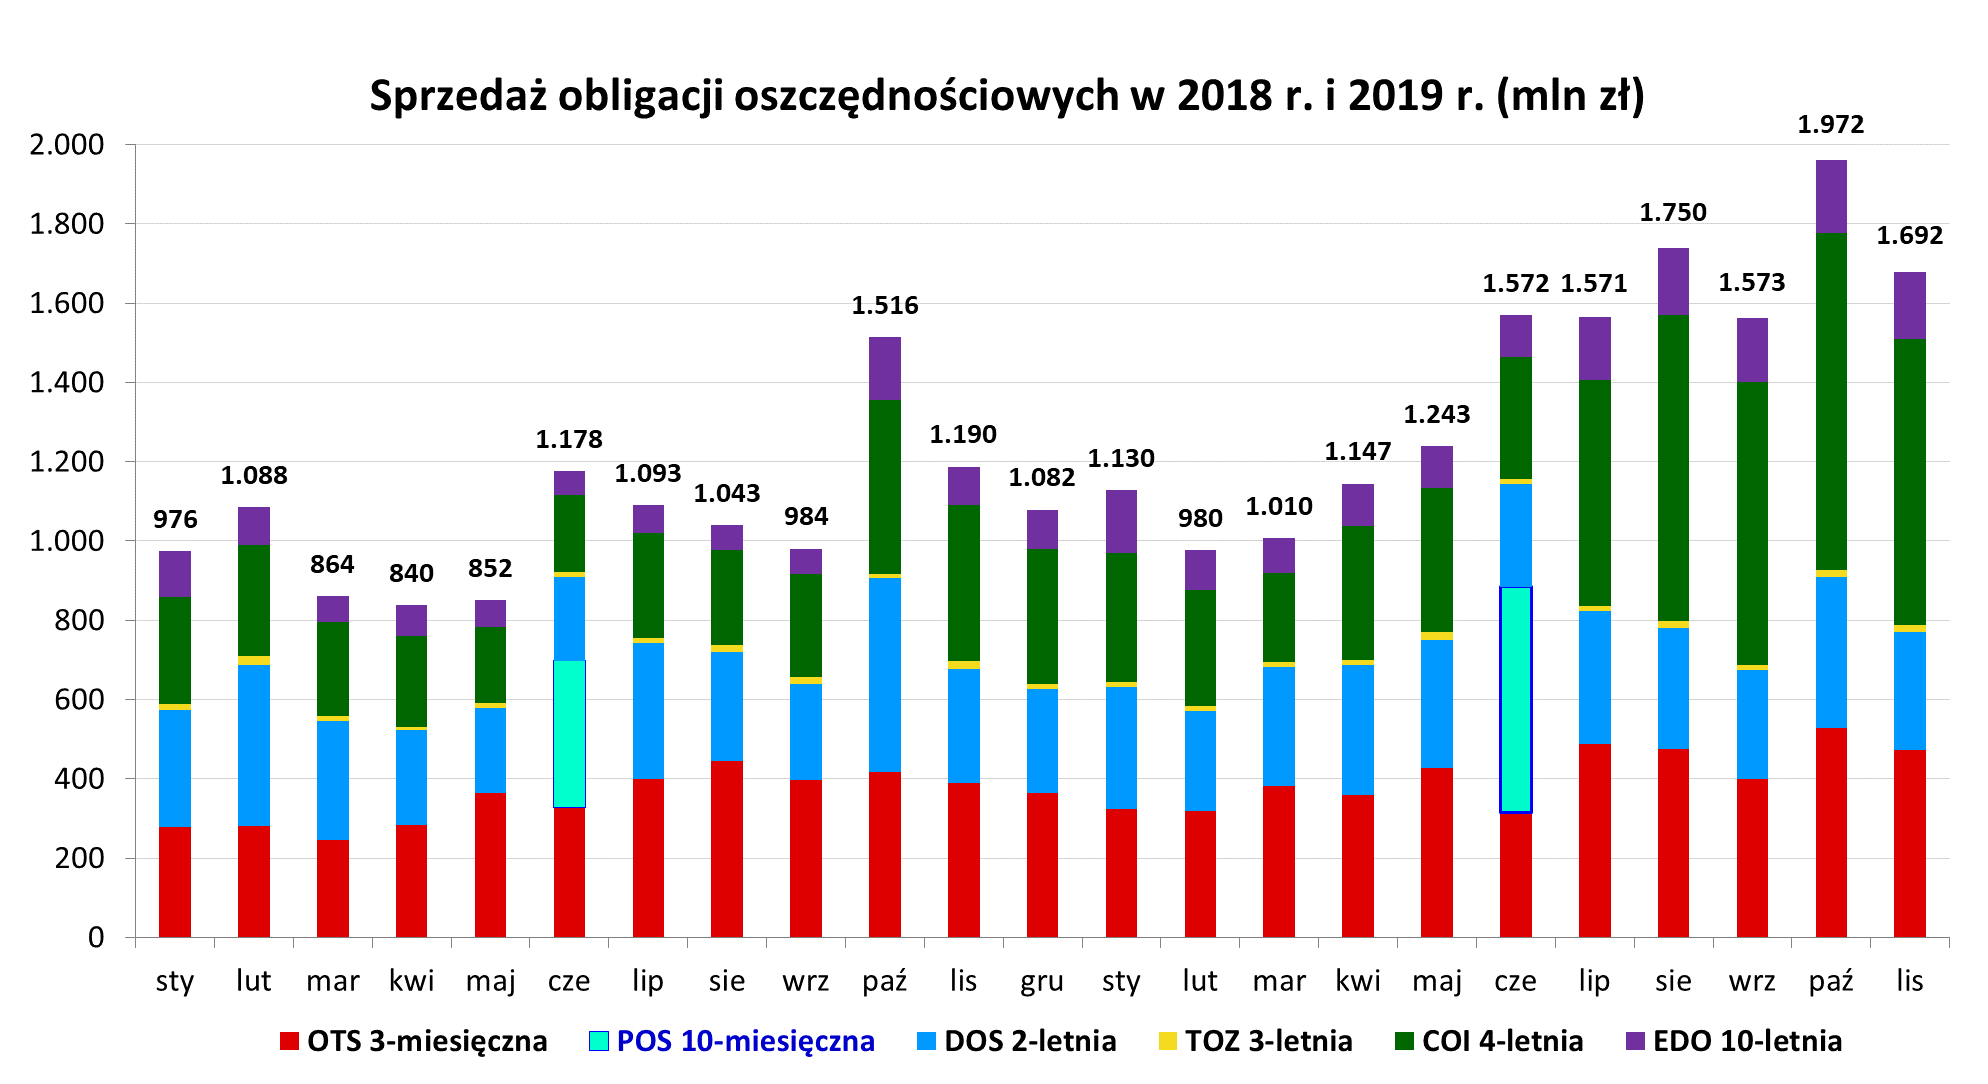 Graf słupkowy przedstawia jacy sprzedaż obligacji oszczędnościowych w 2018 r. i 2019 r. (mln)